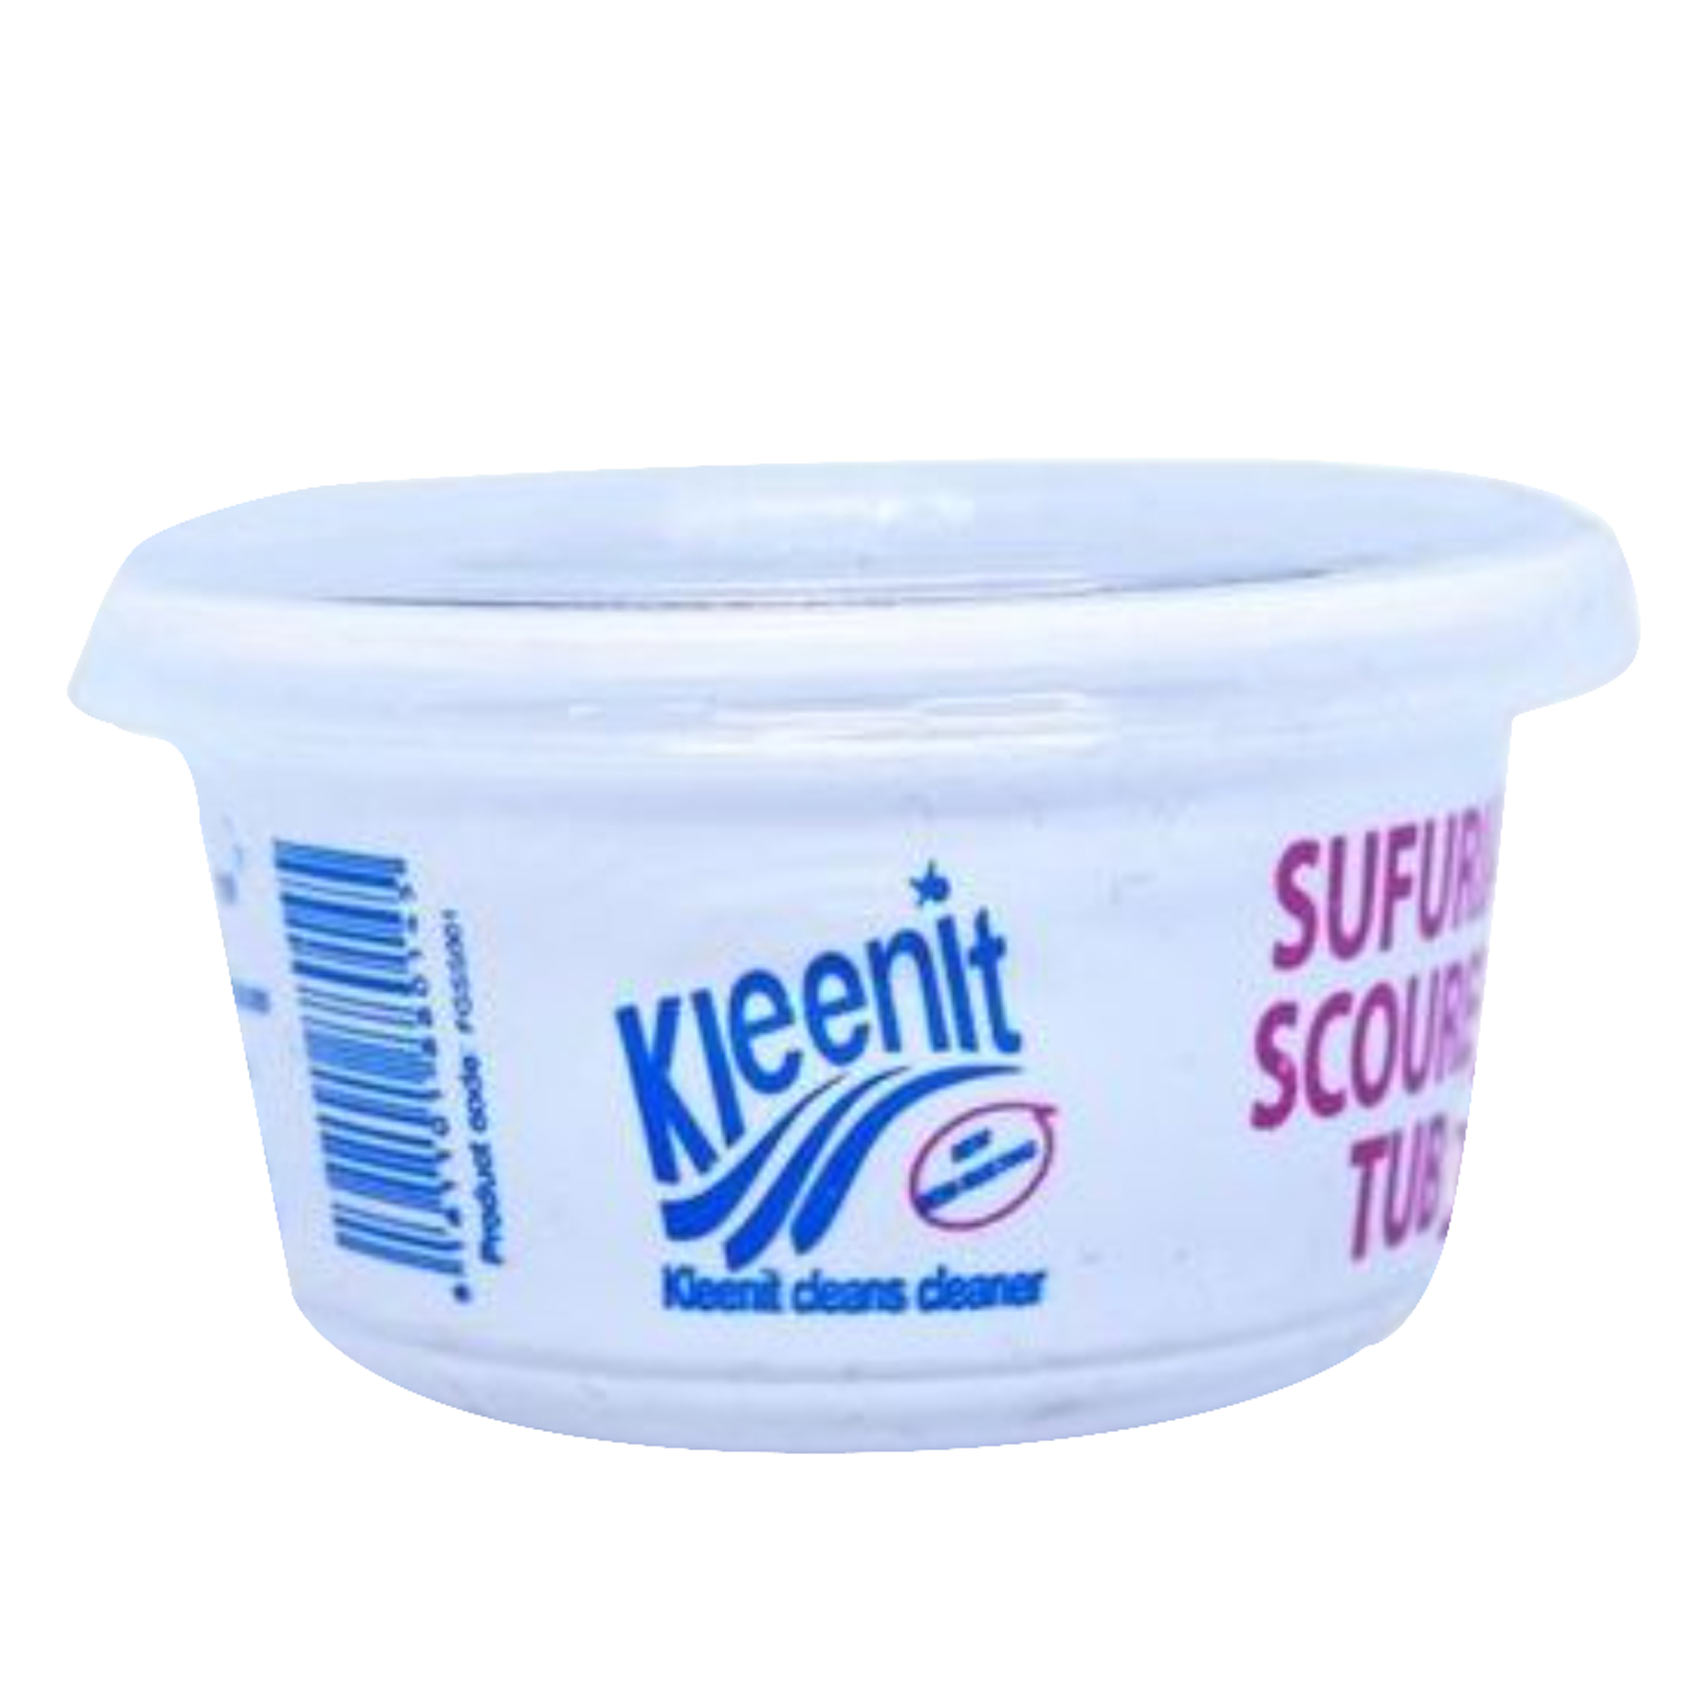 Kleenit Spiral Scourer Tub 18g